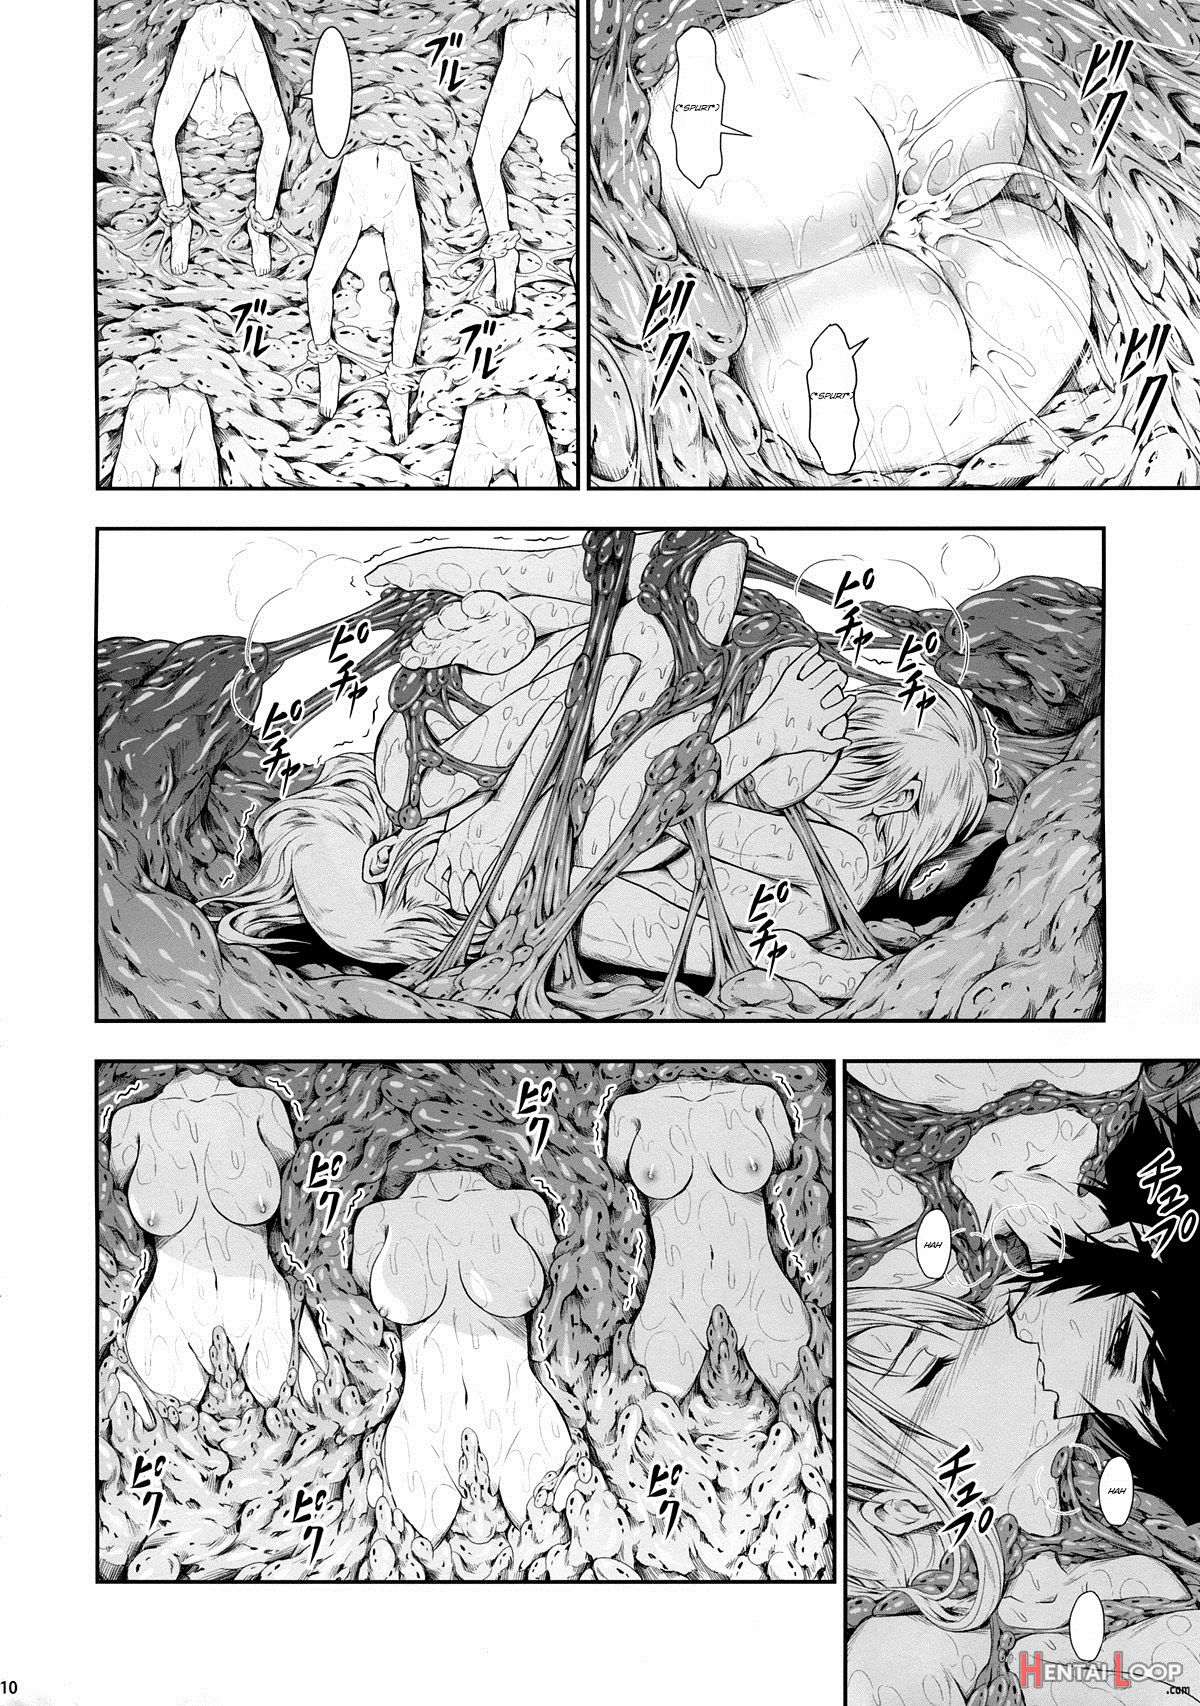 Solo Hunter No Seitai 4: The Third Part page 5